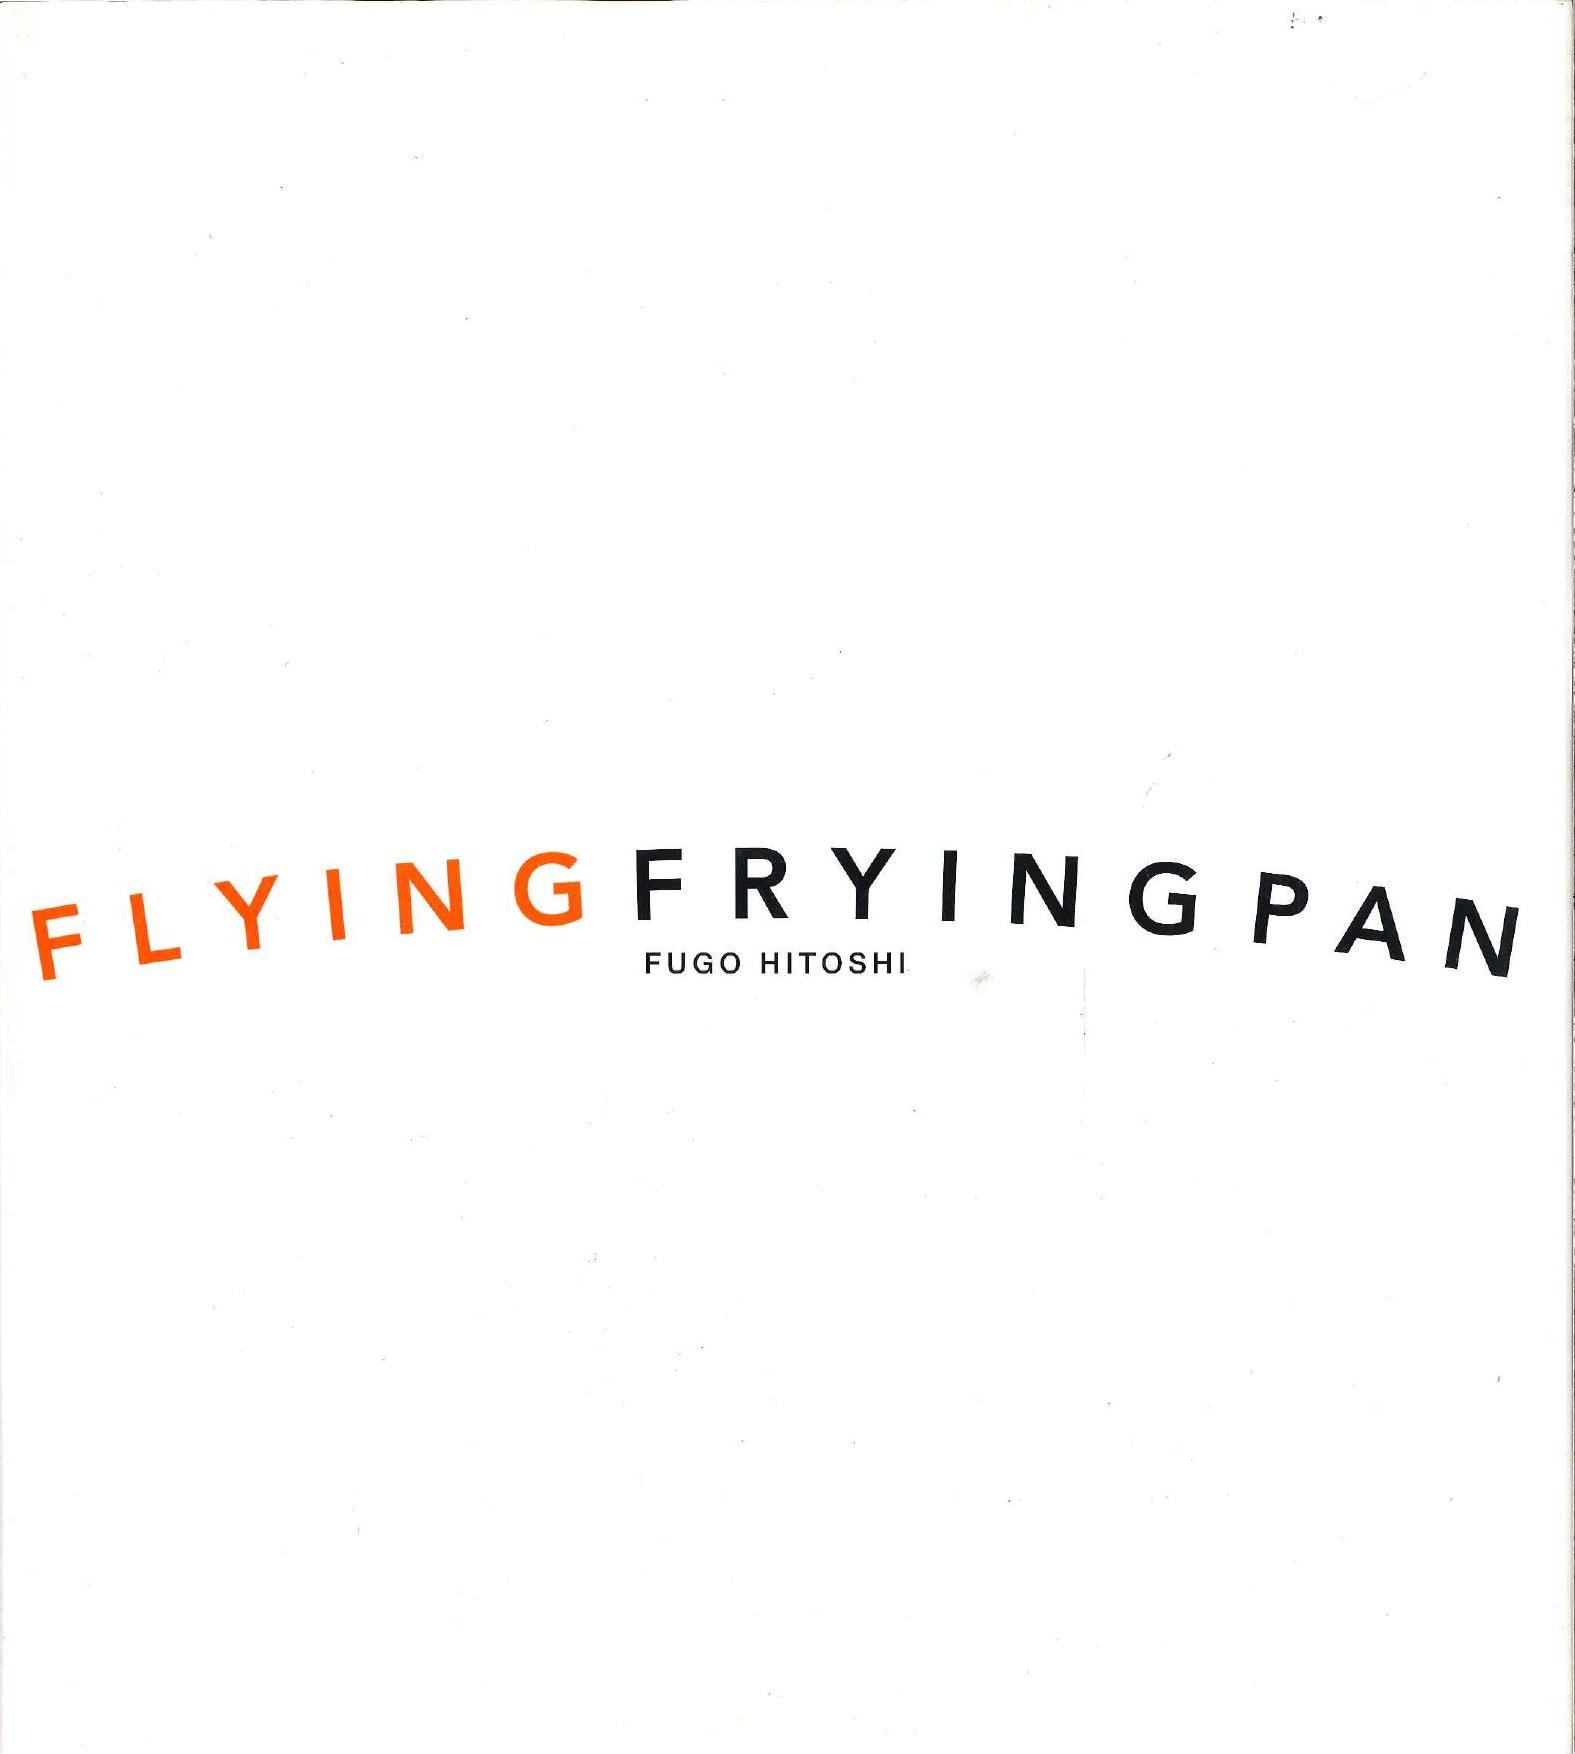 Hitoshi Fugo - Flying Frying Pan